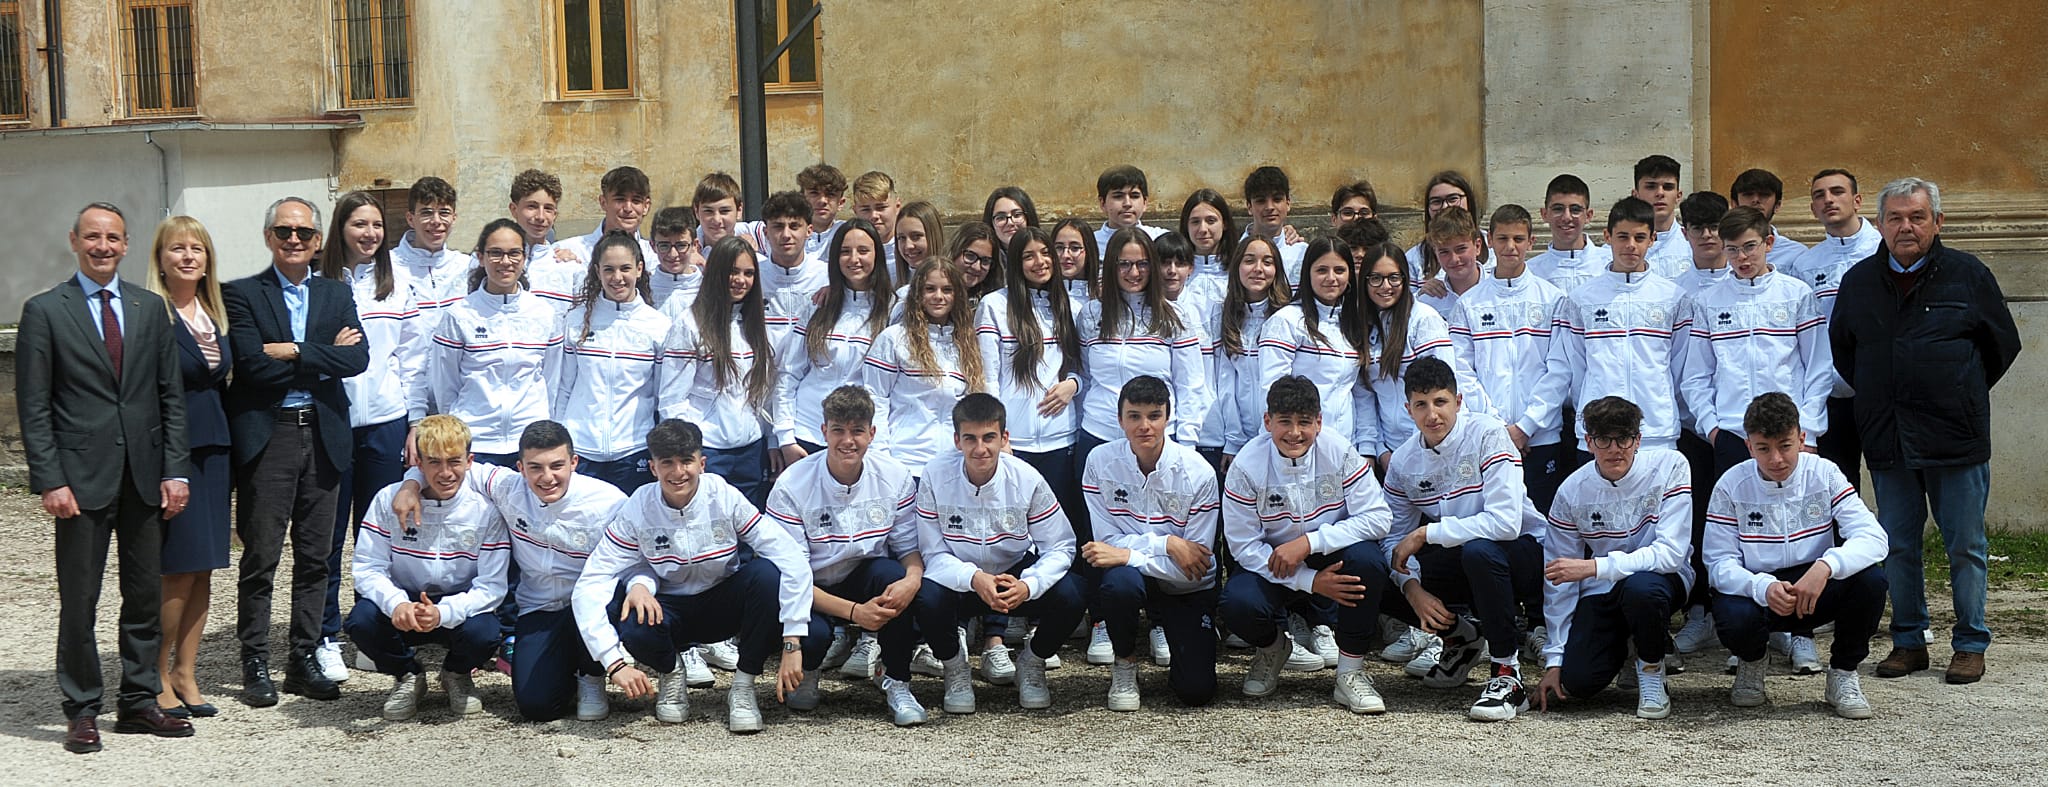 Gli studenti del Liceo Sportivo “Vitruvio” di Avezzano incontrano il Campione Olimpico Daniele Masala in un evento del Panathlon Club Avezzano.